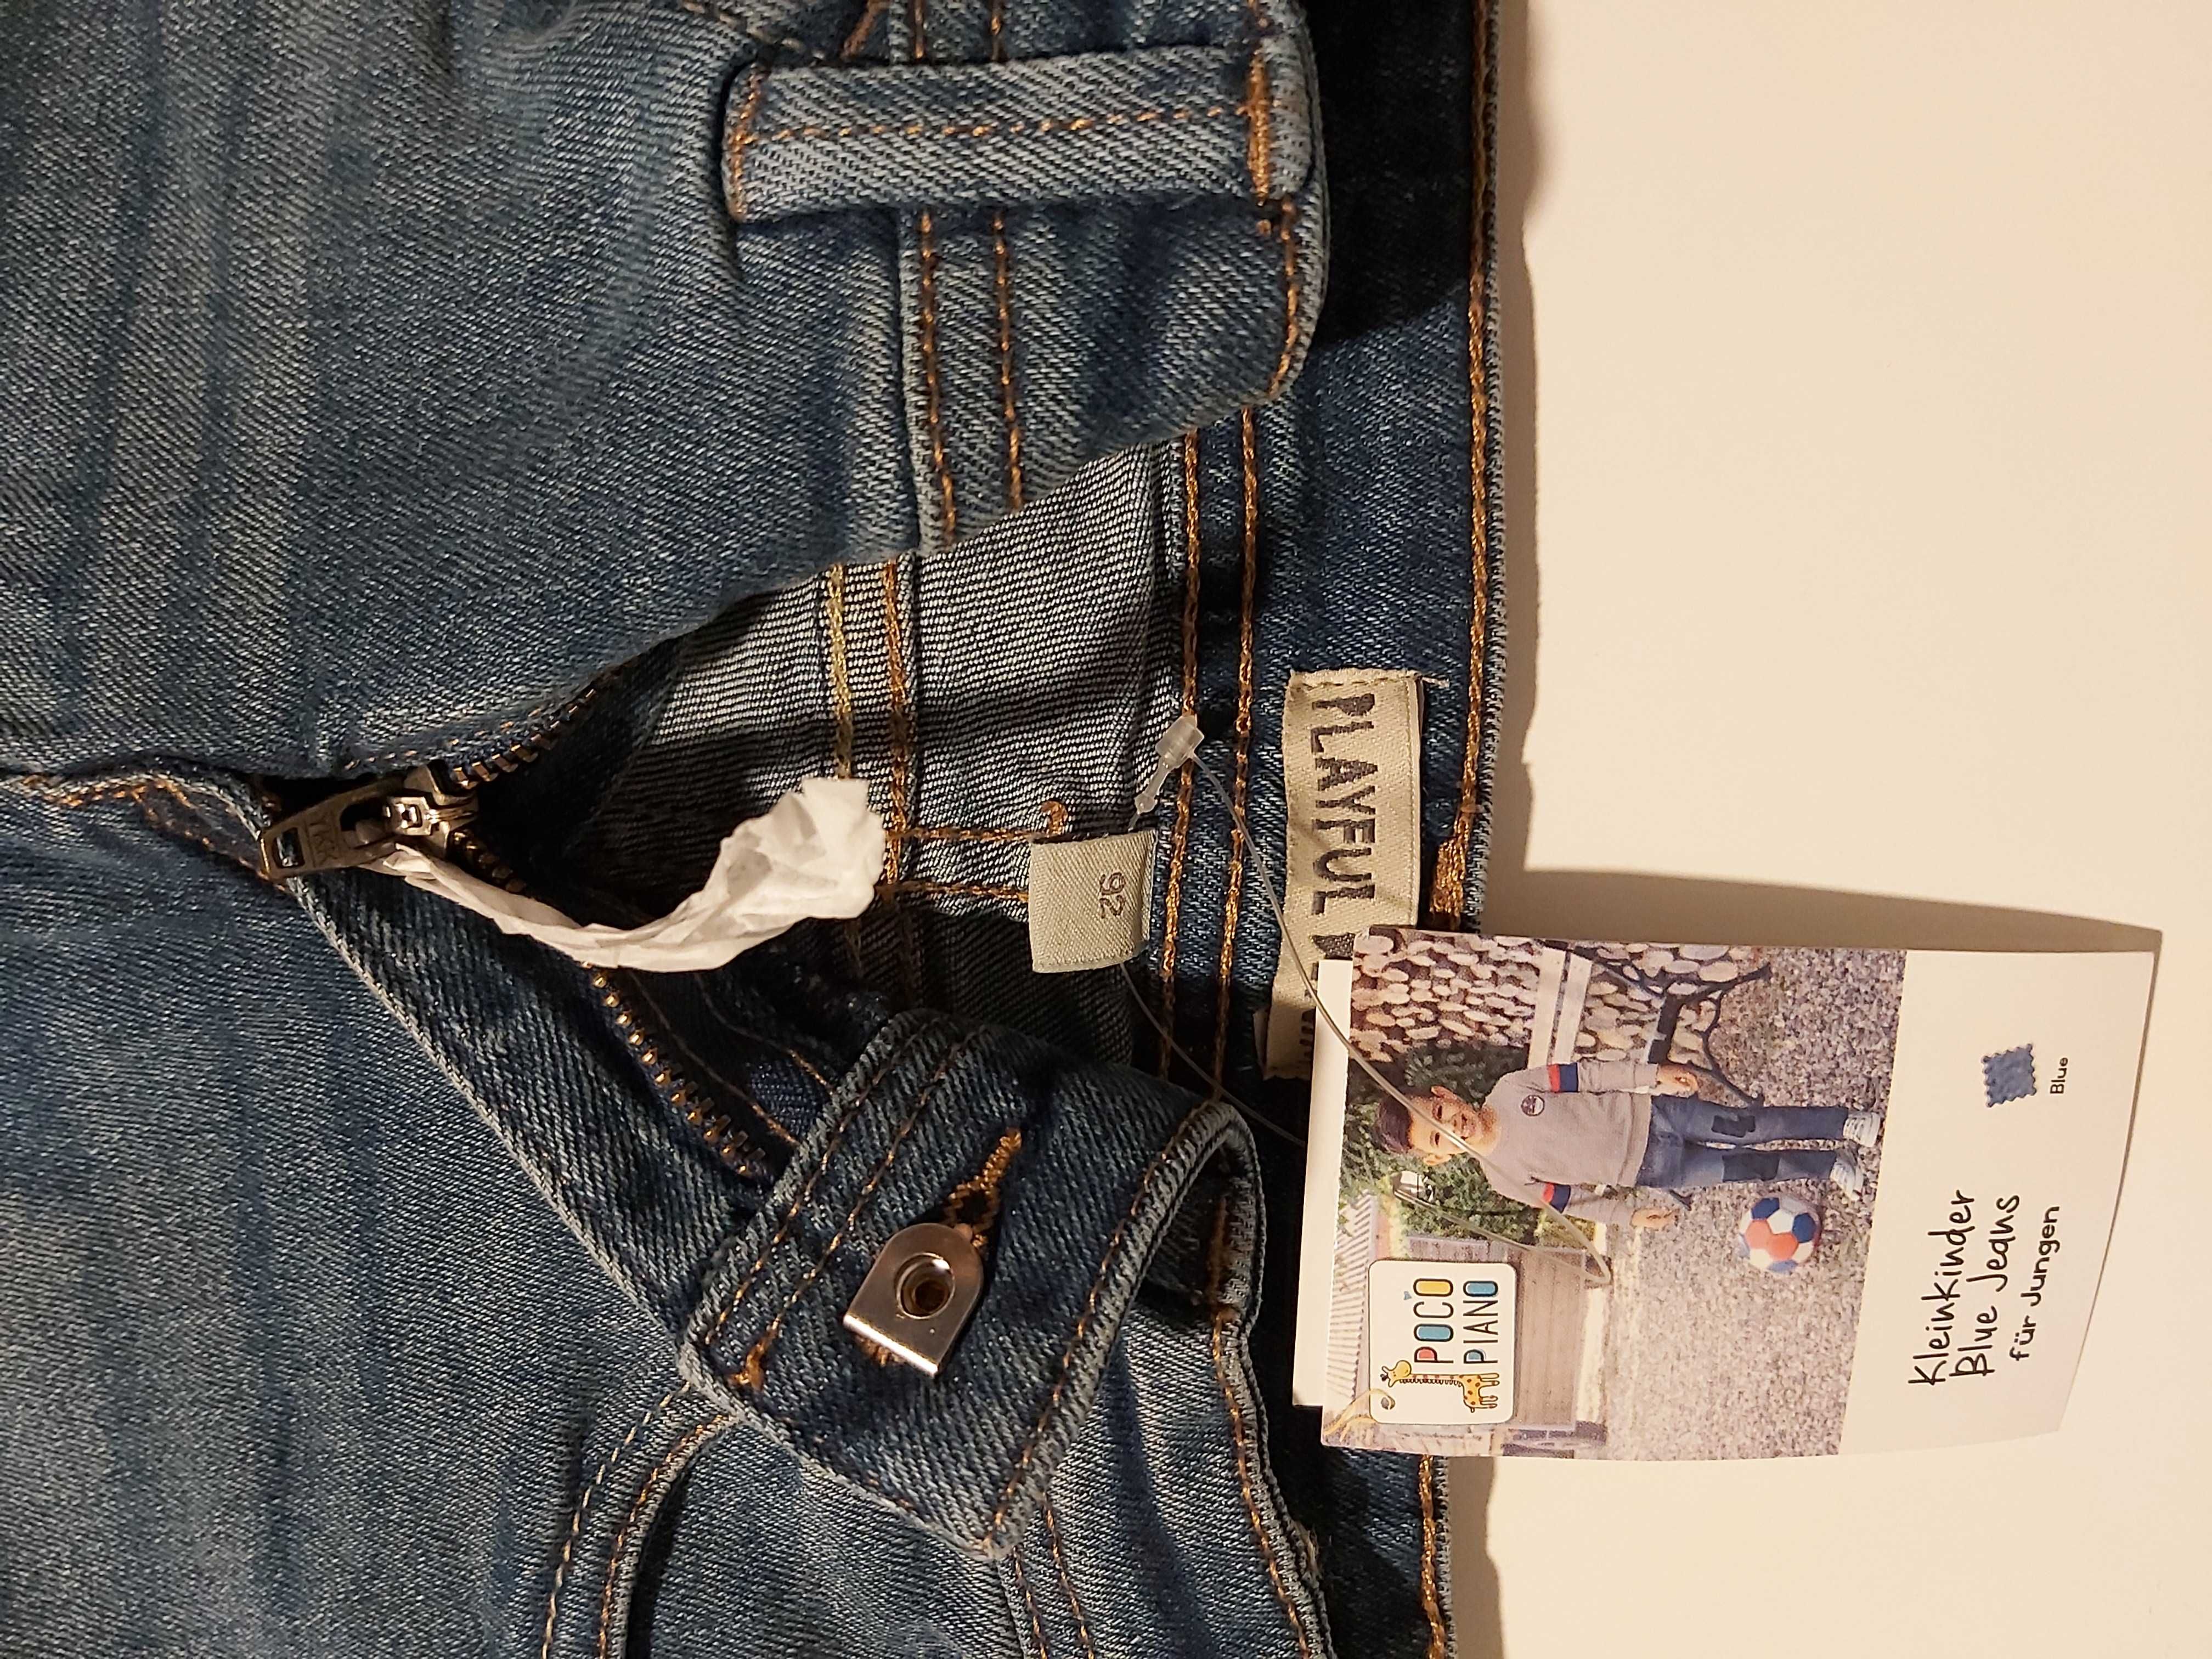 Nowe spodnie jeansy, dżinsy chłopięce 86/92, świetny fason